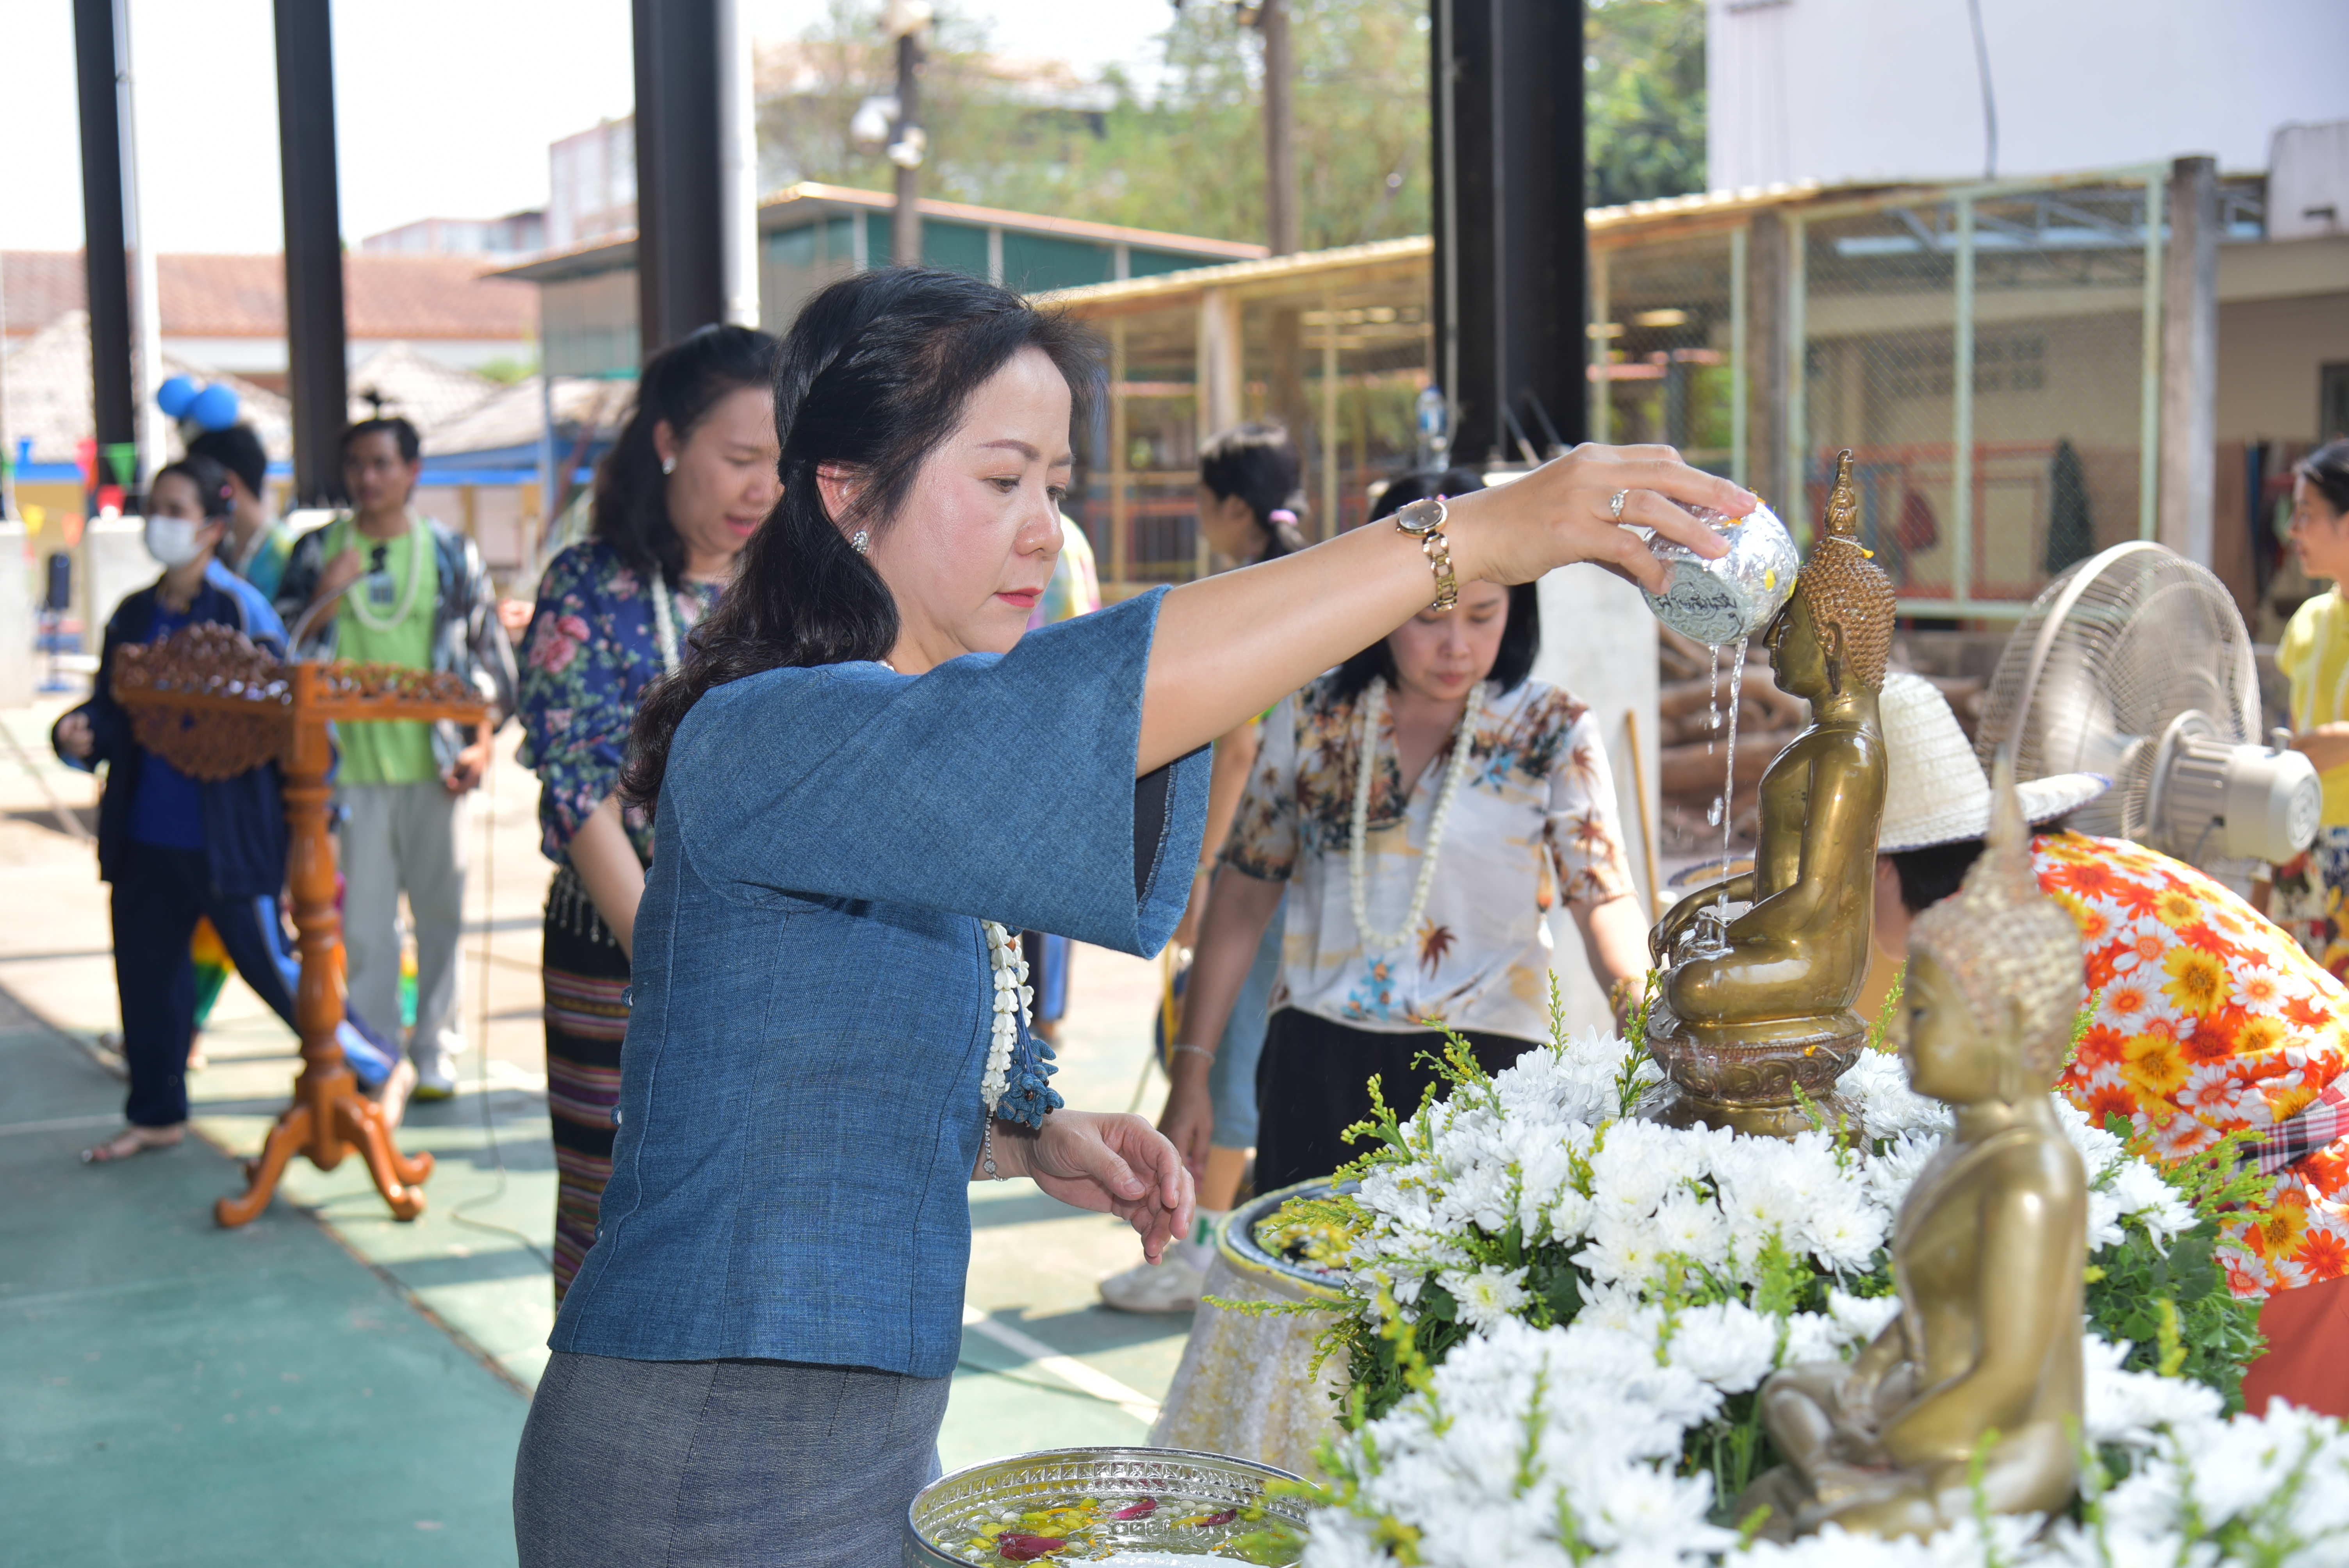 วพบ.นครพนม จัดโครงการทำนุบำรุงศิลปวัฒนธรรม กิจกรรมสงกรานต์ ประจำปี 2566 เพื่อเป็นสิริมงคล เนื่องในโอกาสปีใหม่ไทย